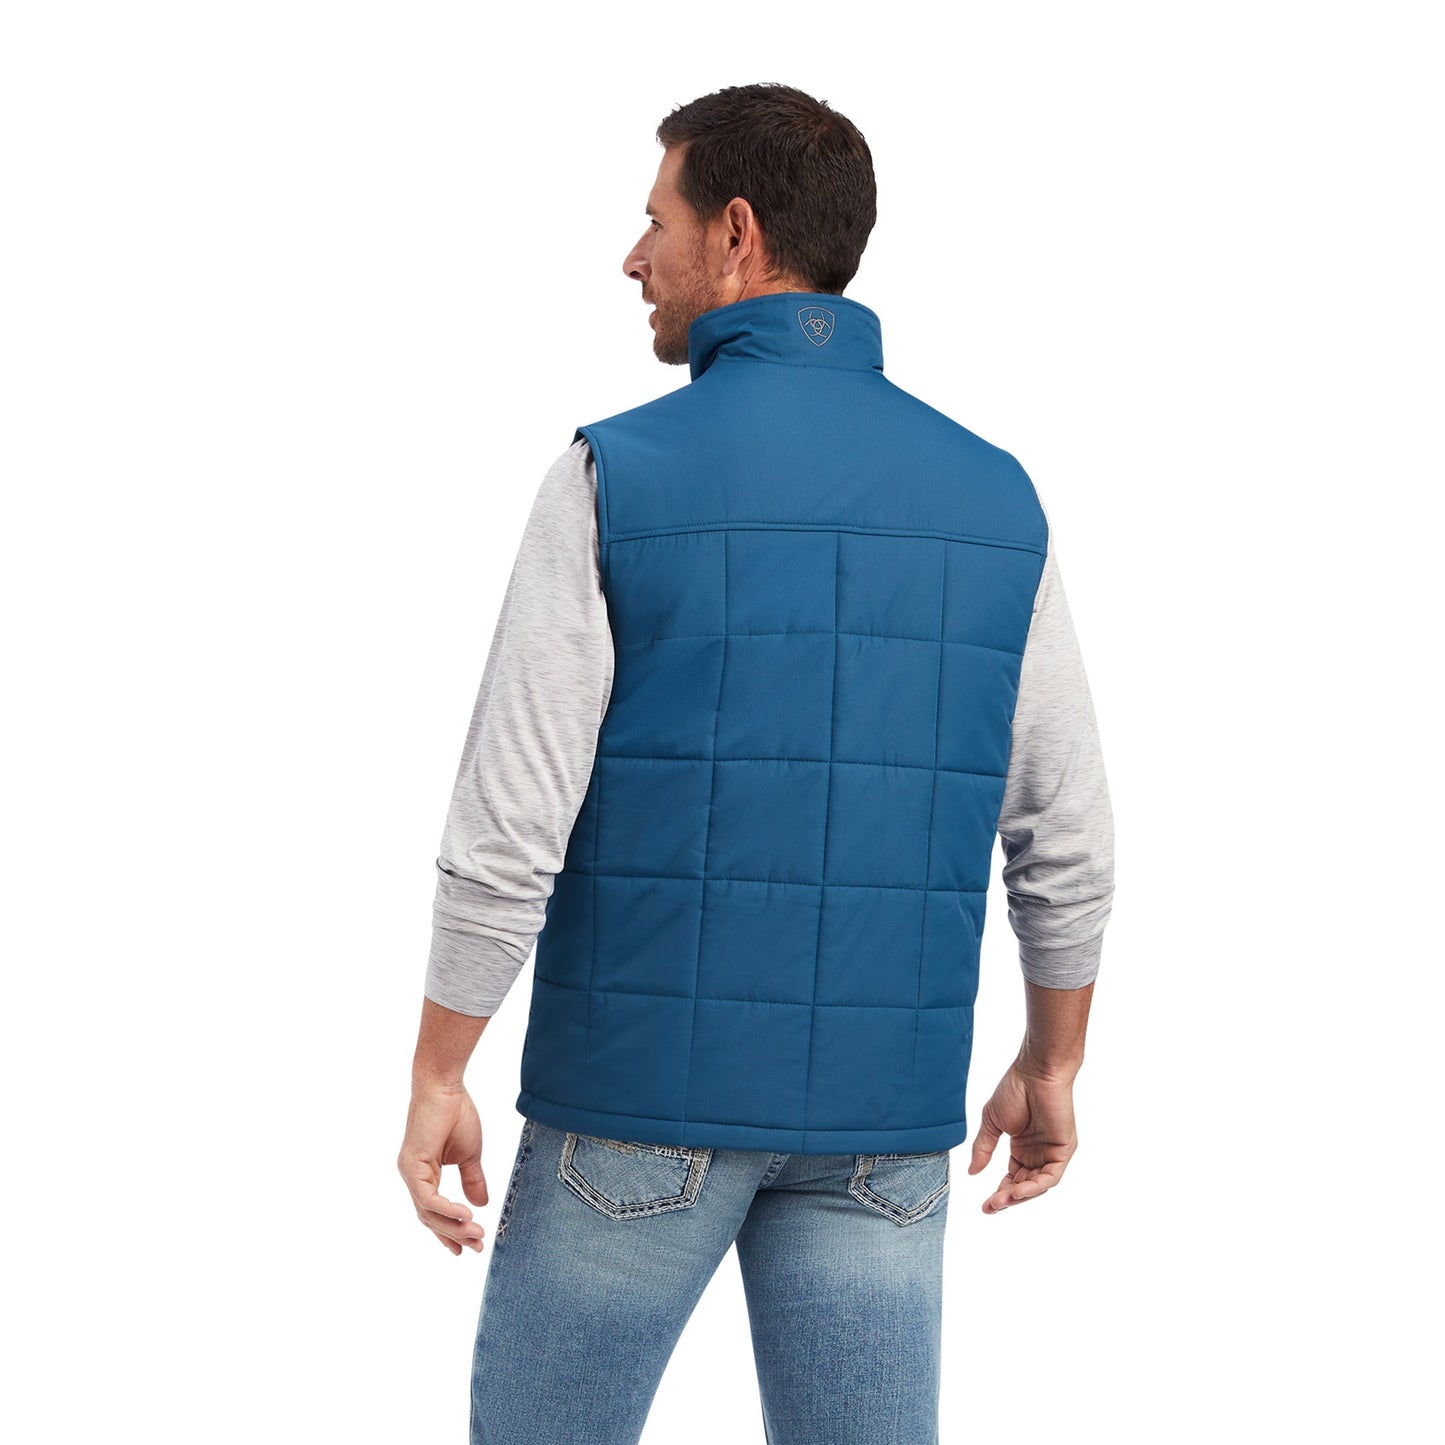 Ariat® Crius Concealed Carry Majolica Blue Vest